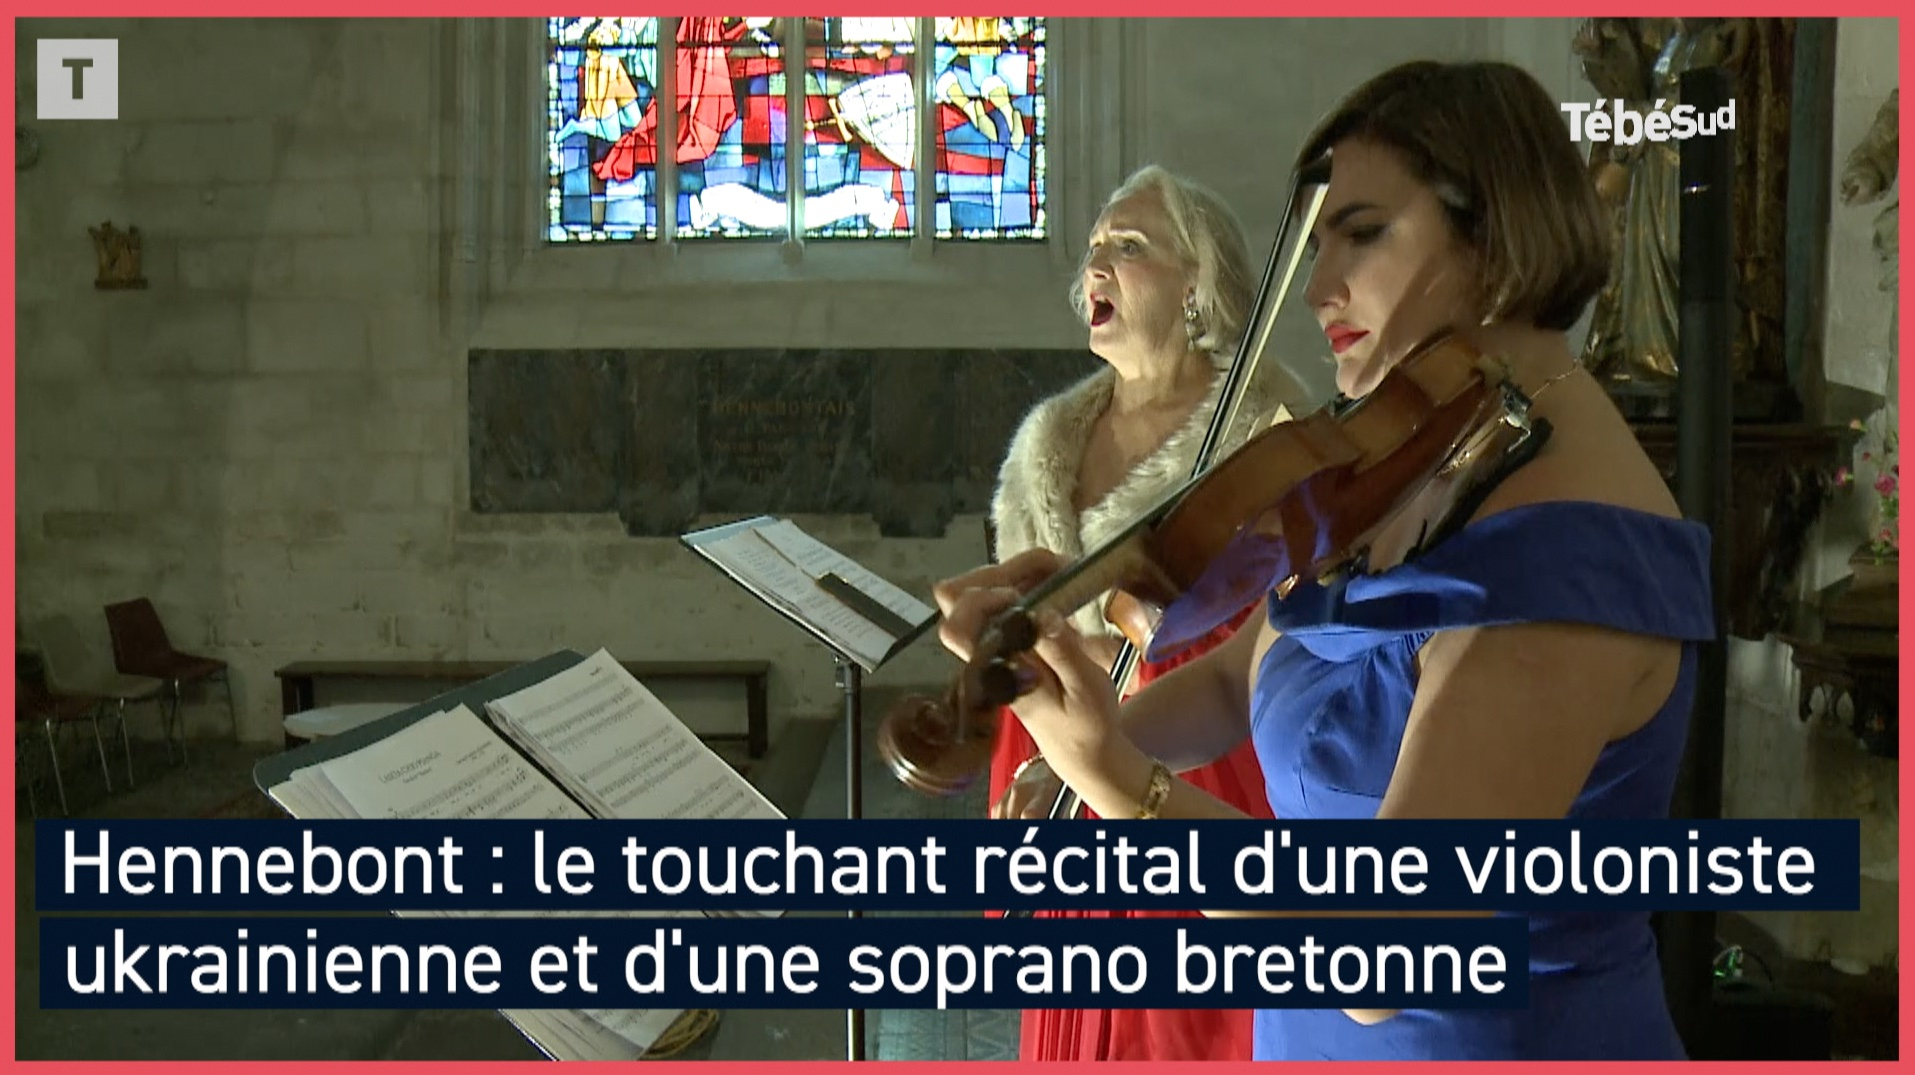 À Hennebont, le touchant récital d'une violoniste ukrainienne et d'une soprano bretonne (Le Télégramme)